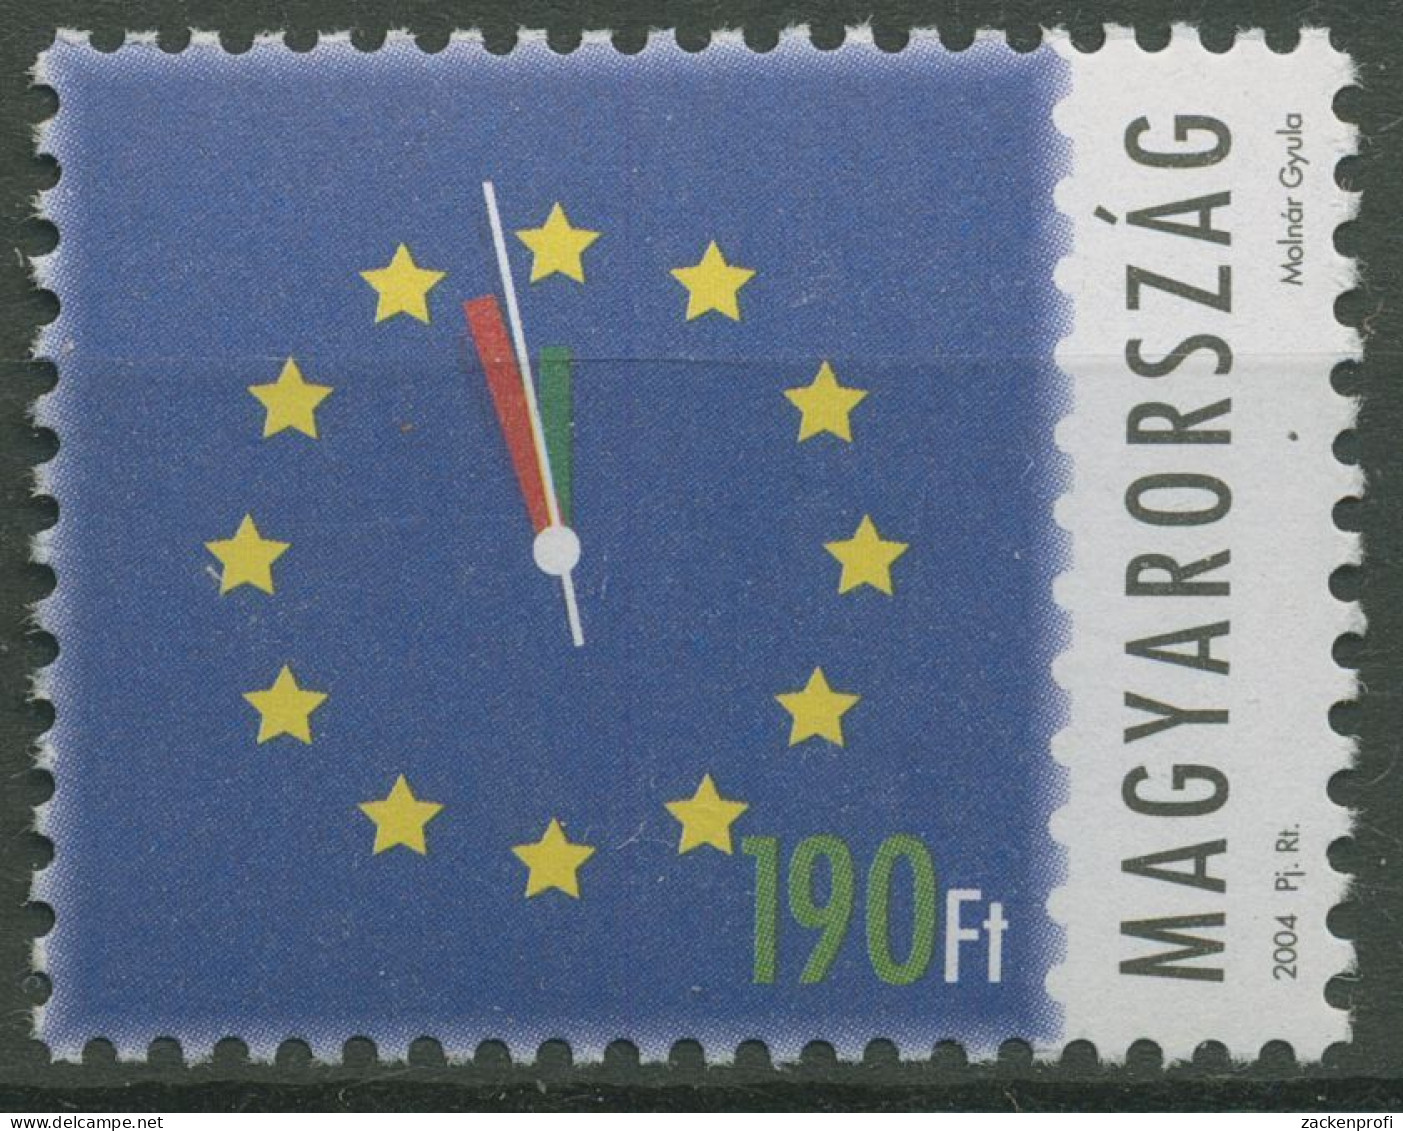 Ungarn 2004 Aufnahme In Die Europäische Union Ziffernblatt 4844 Postfrisch - Unused Stamps